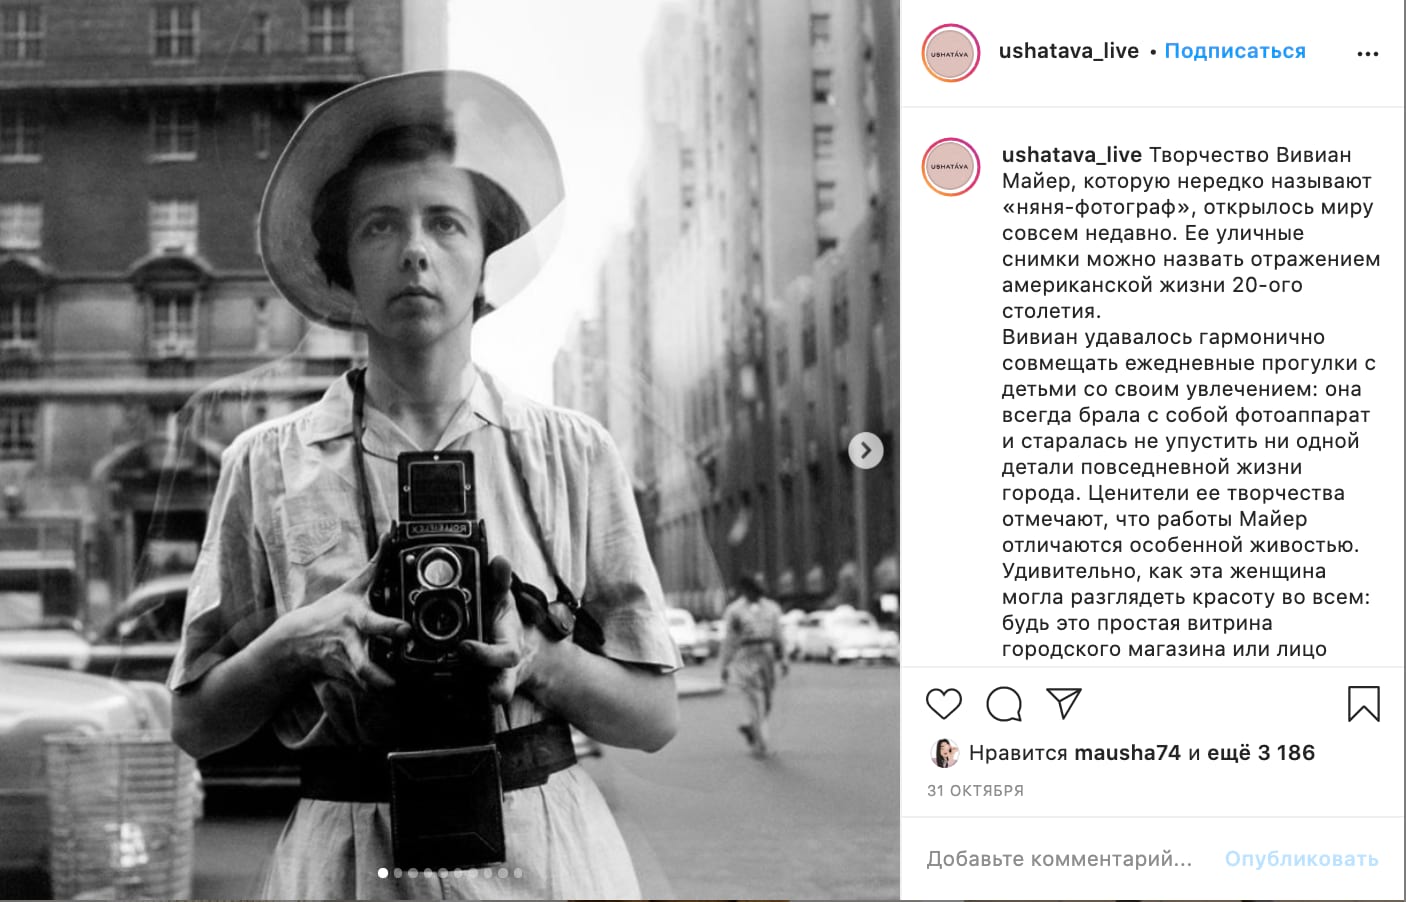 Рассказ про фотографа и снимки в карусели в аккаунте бренда